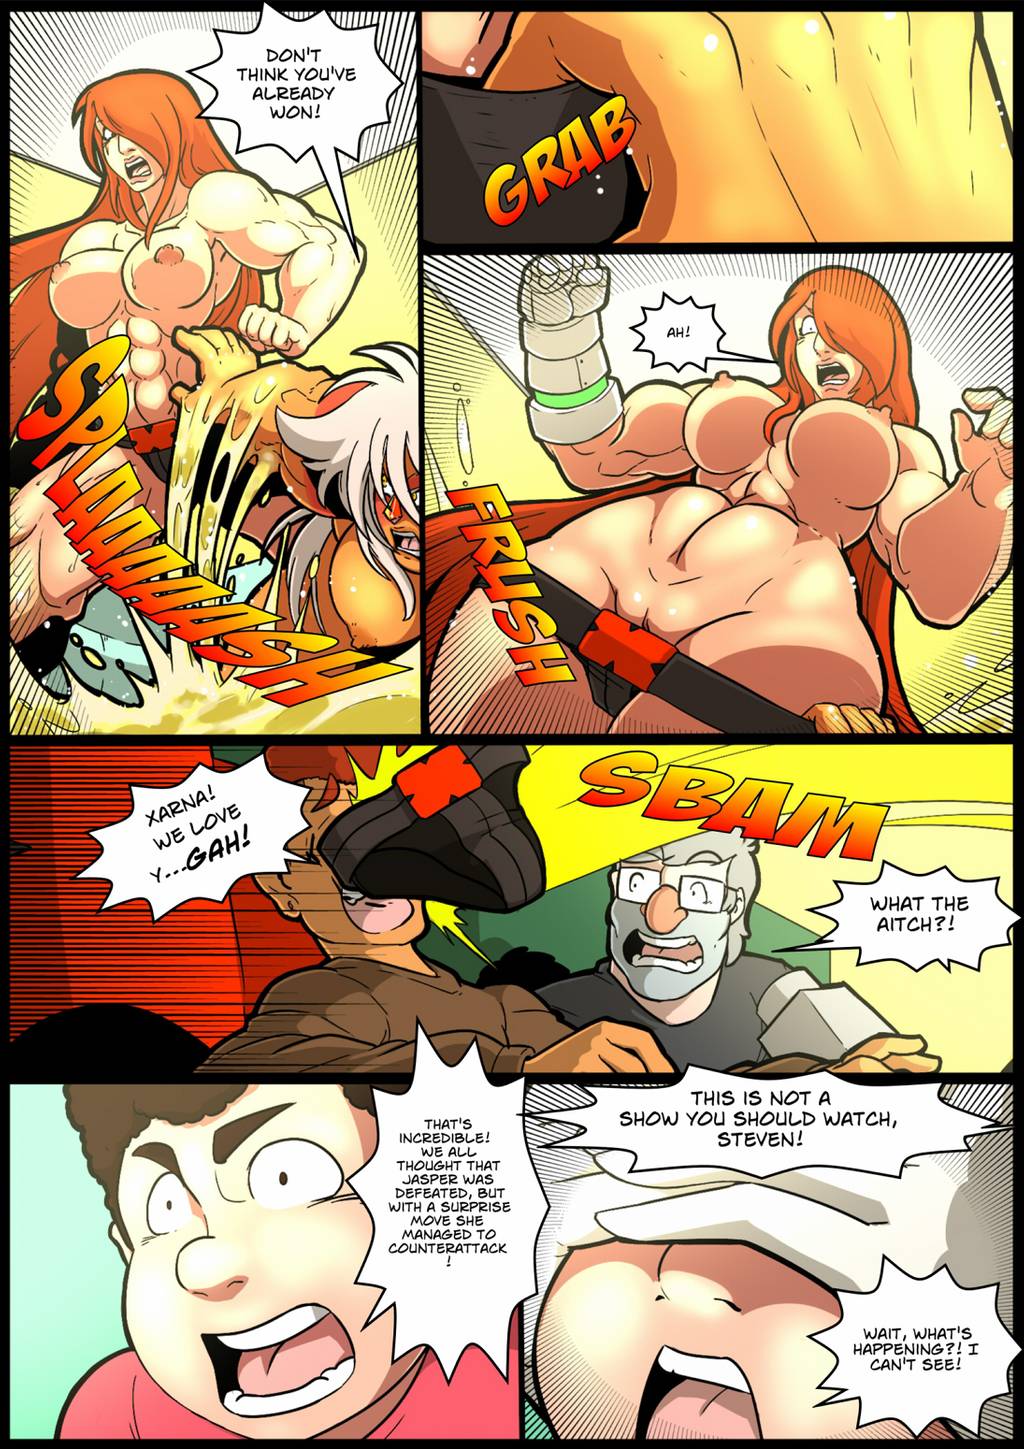 Fantasr\stic superhero comic by Mad Project - Jasper vs Xarna